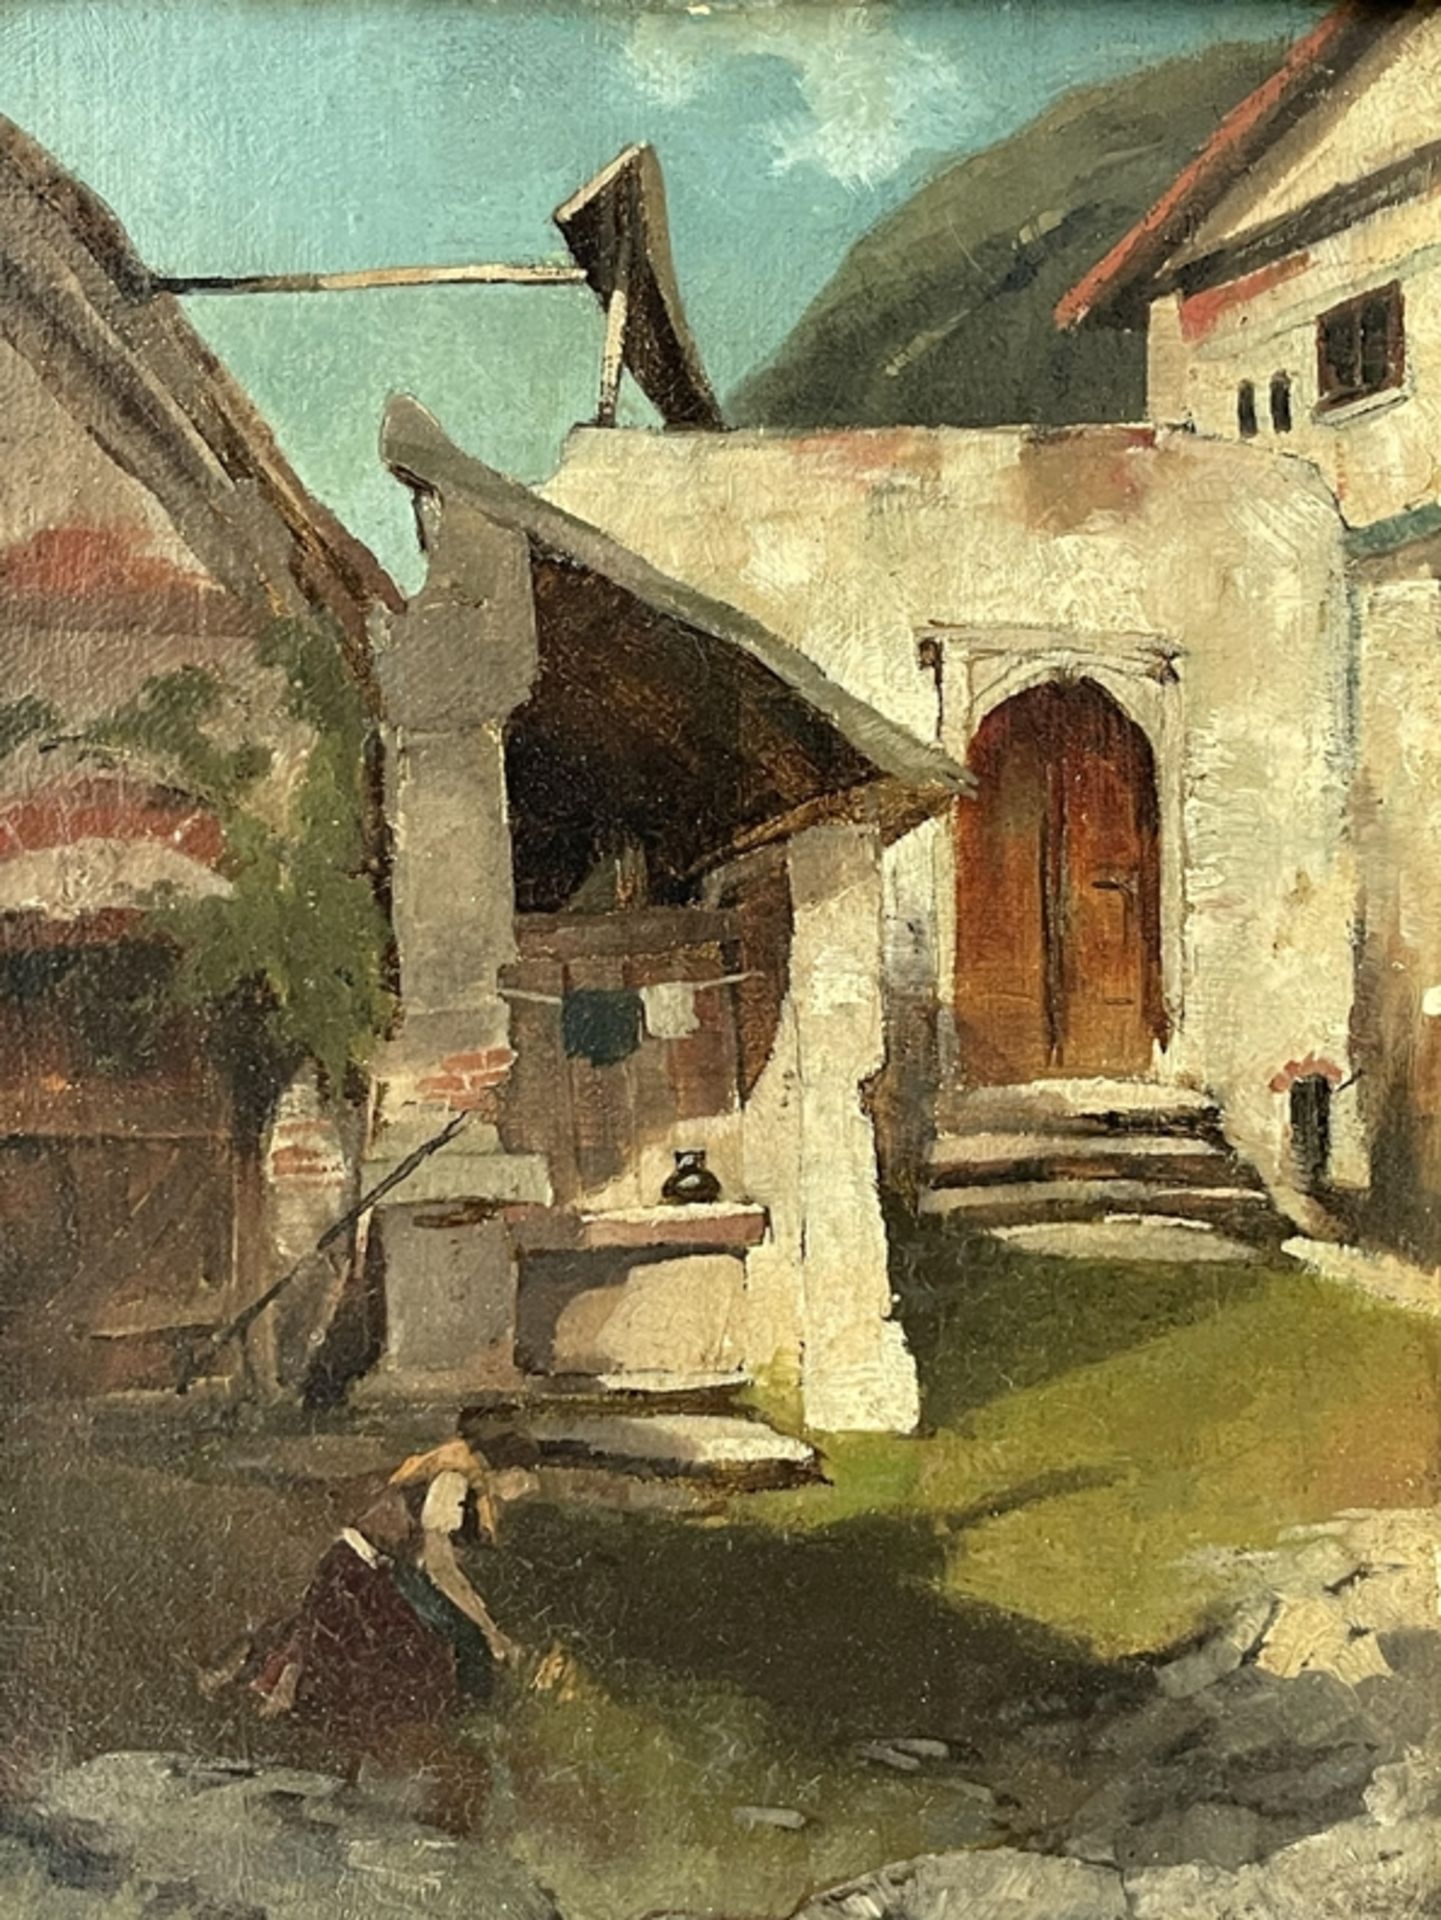 Gemälde " Haus in den Tiroler Bergen" nach Walde  - Bild 2 aus 4